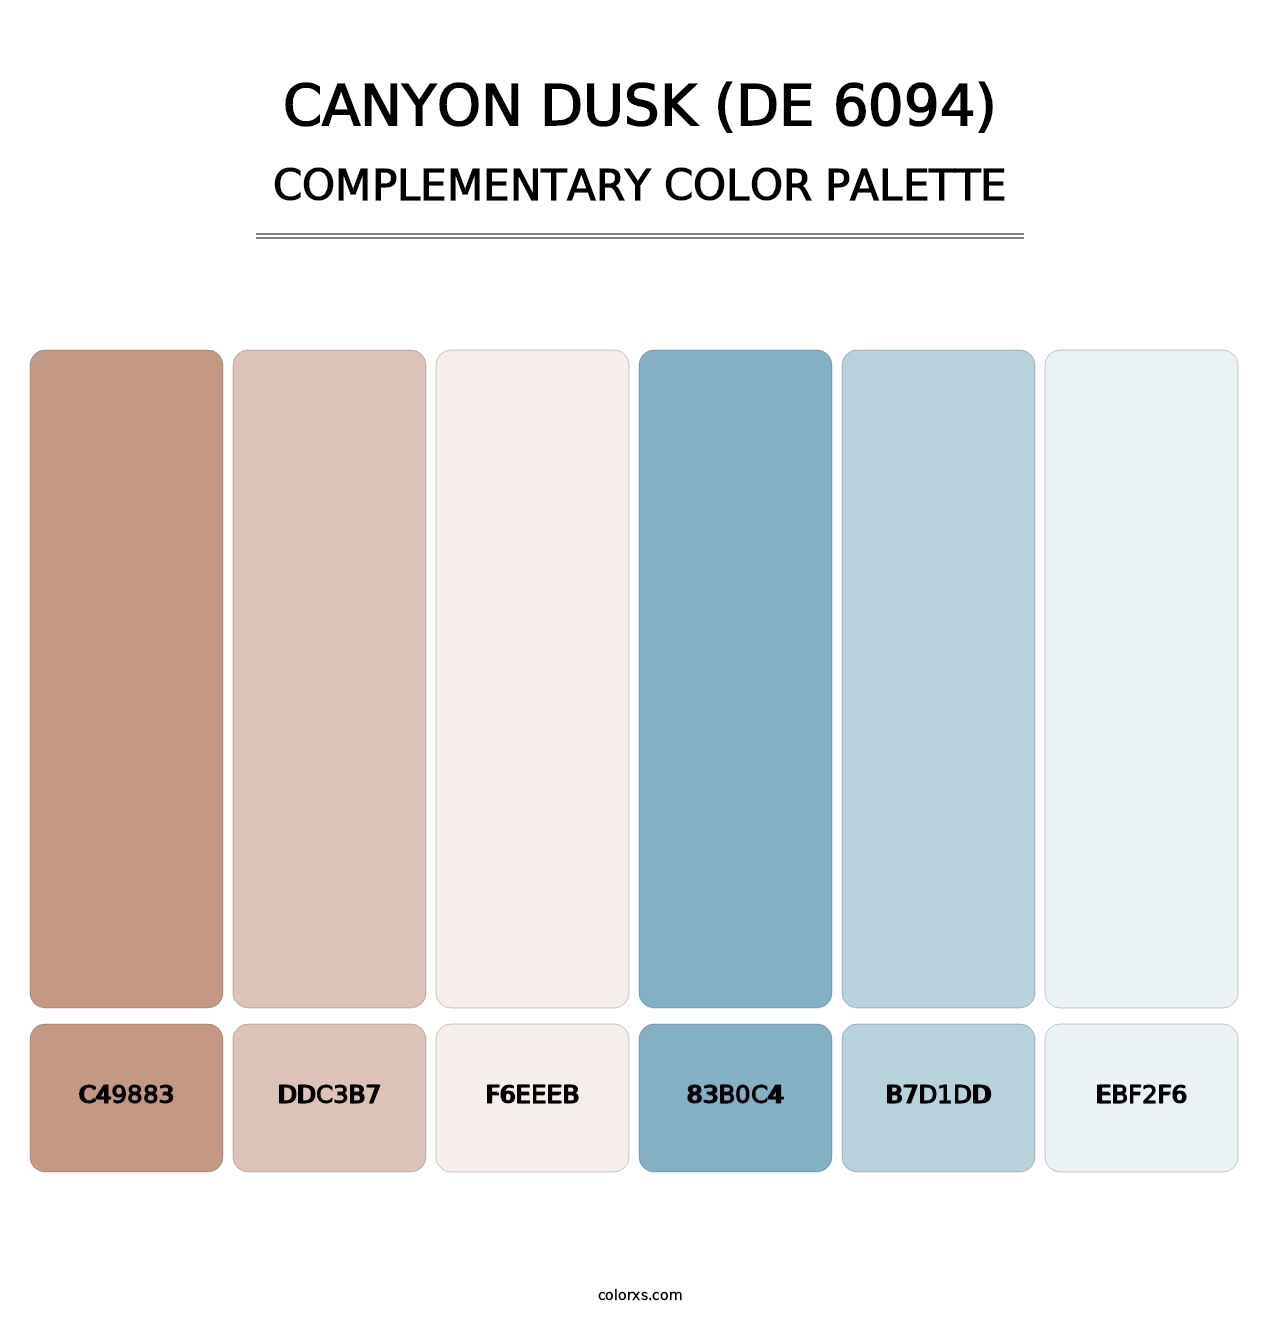 Canyon Dusk (DE 6094) - Complementary Color Palette